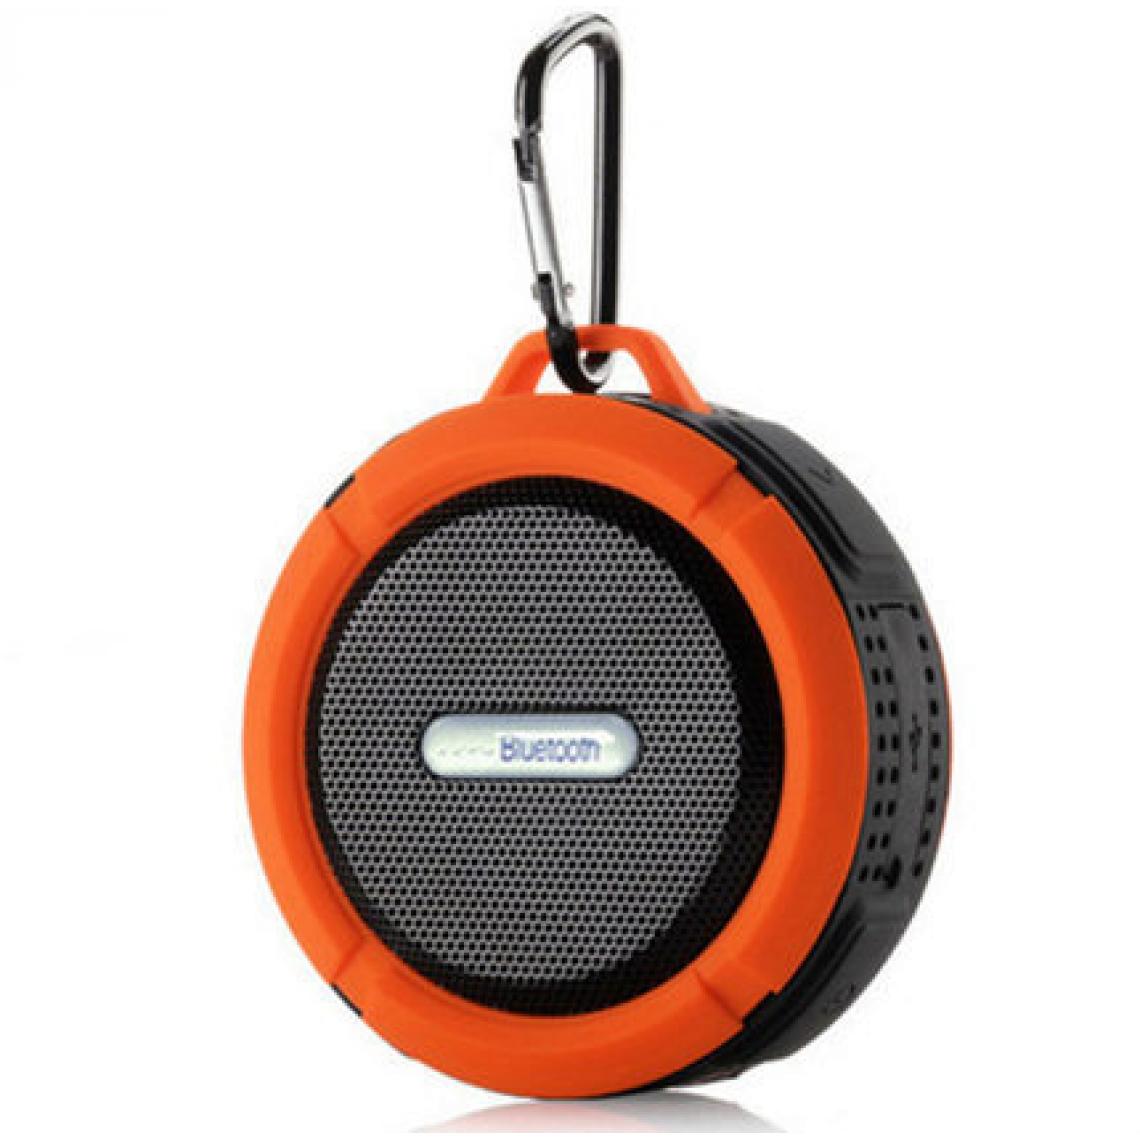 Universal - Haut-parleur Bluetooth portable haut-parleur subwoofer chanteur imperméable haute qualité stéréo activités extérieures | subwoofer (orange) - Hauts-parleurs